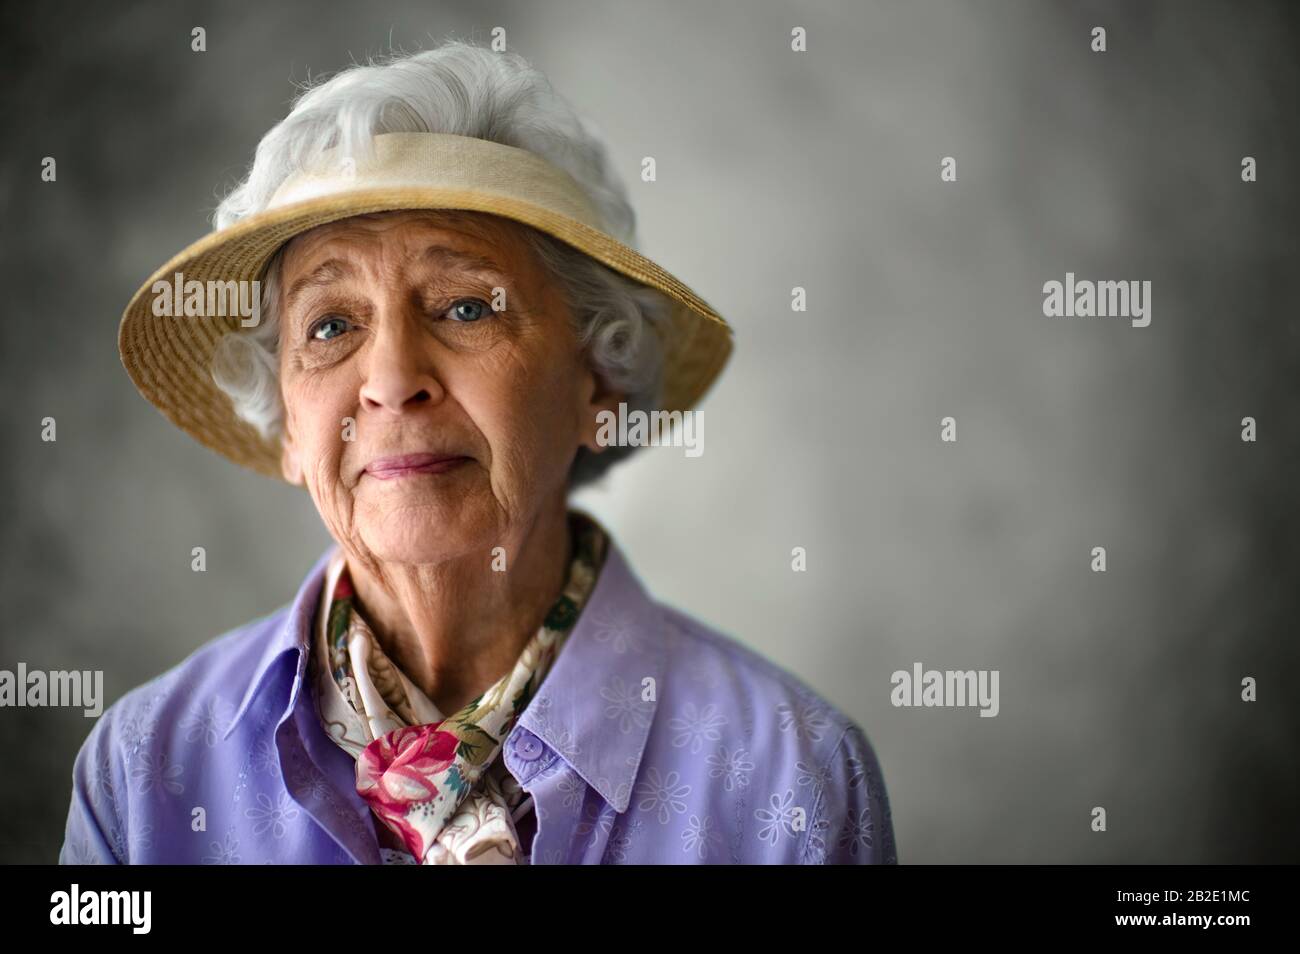 Portrait of an elderly woman wearing a sun hat Stock Photo